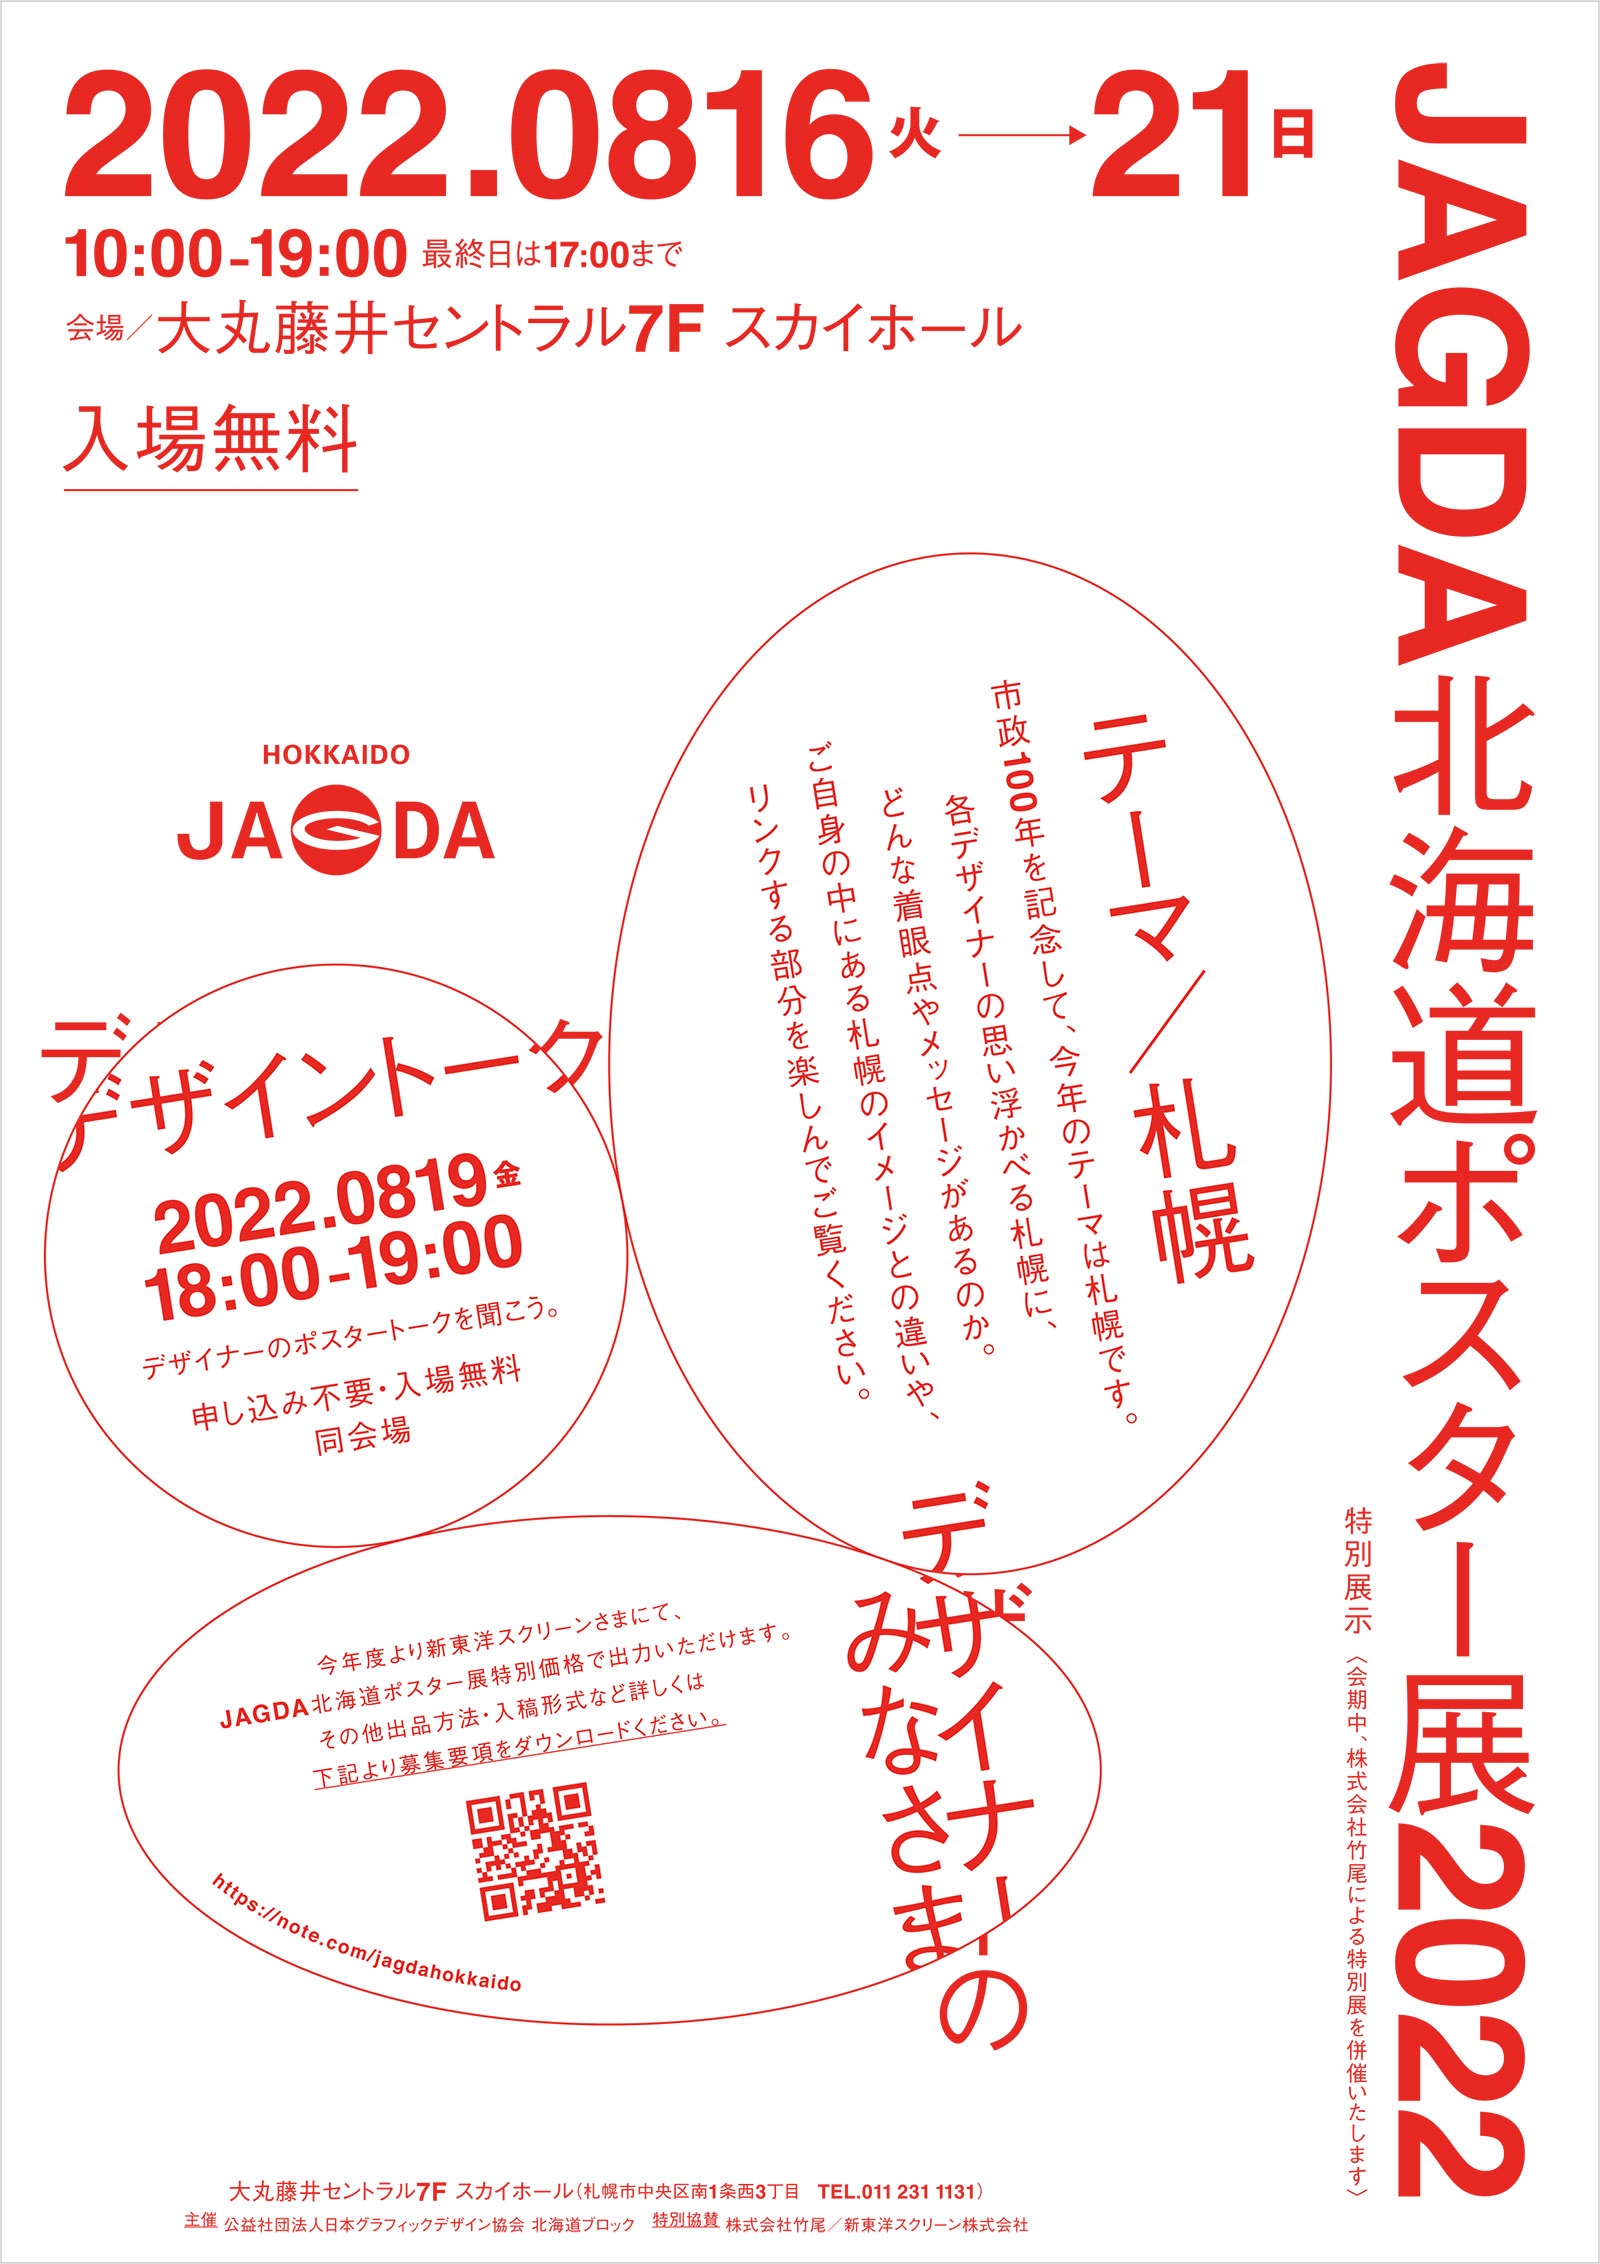 JAGDA北海道ポスター展2022【JAGDA北海道】